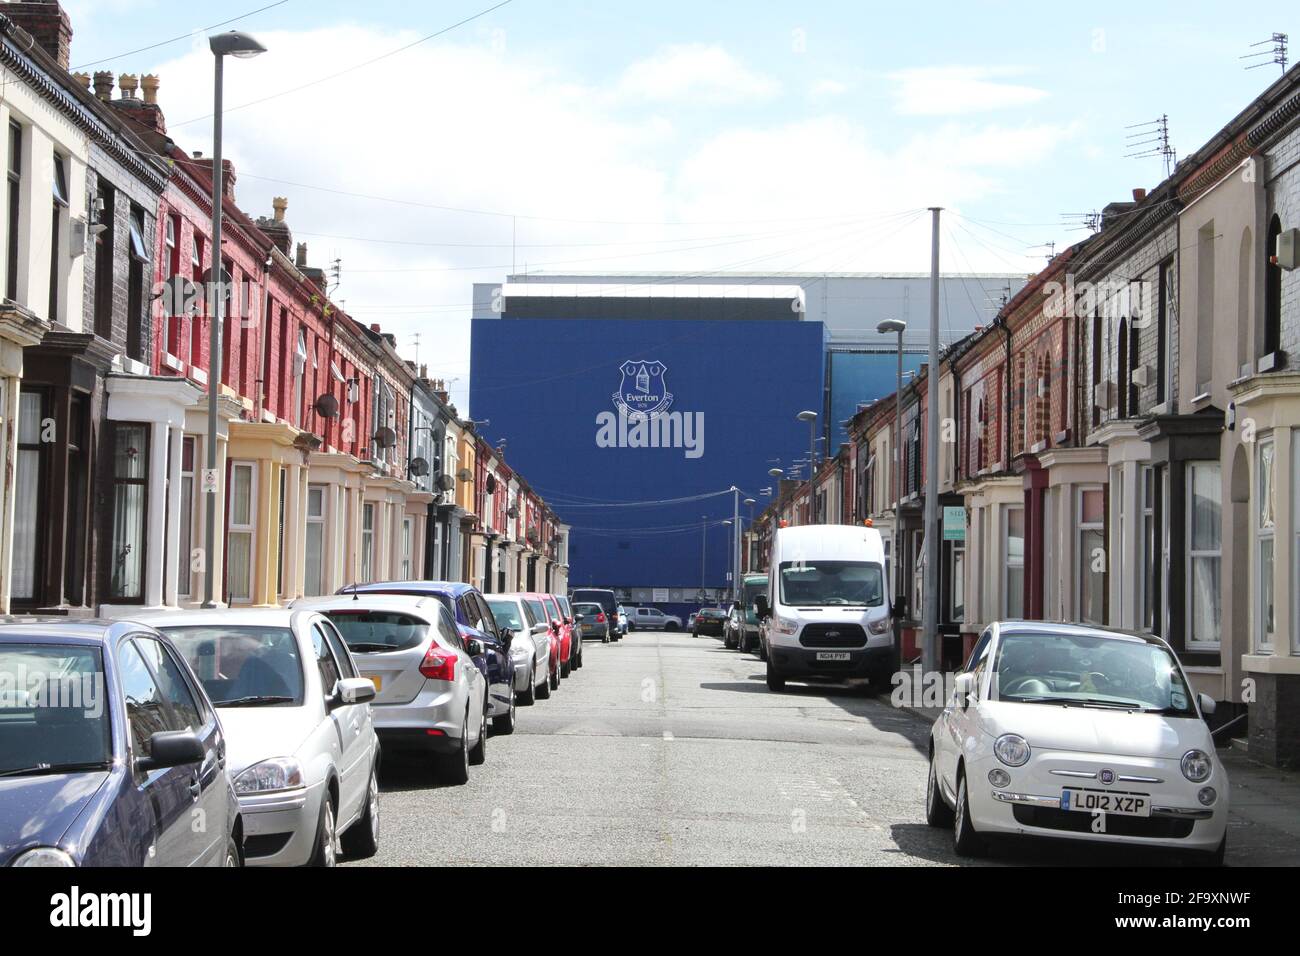 Le stade du club de football d'Everton vu de l'un des rues qui l'entourent Banque D'Images